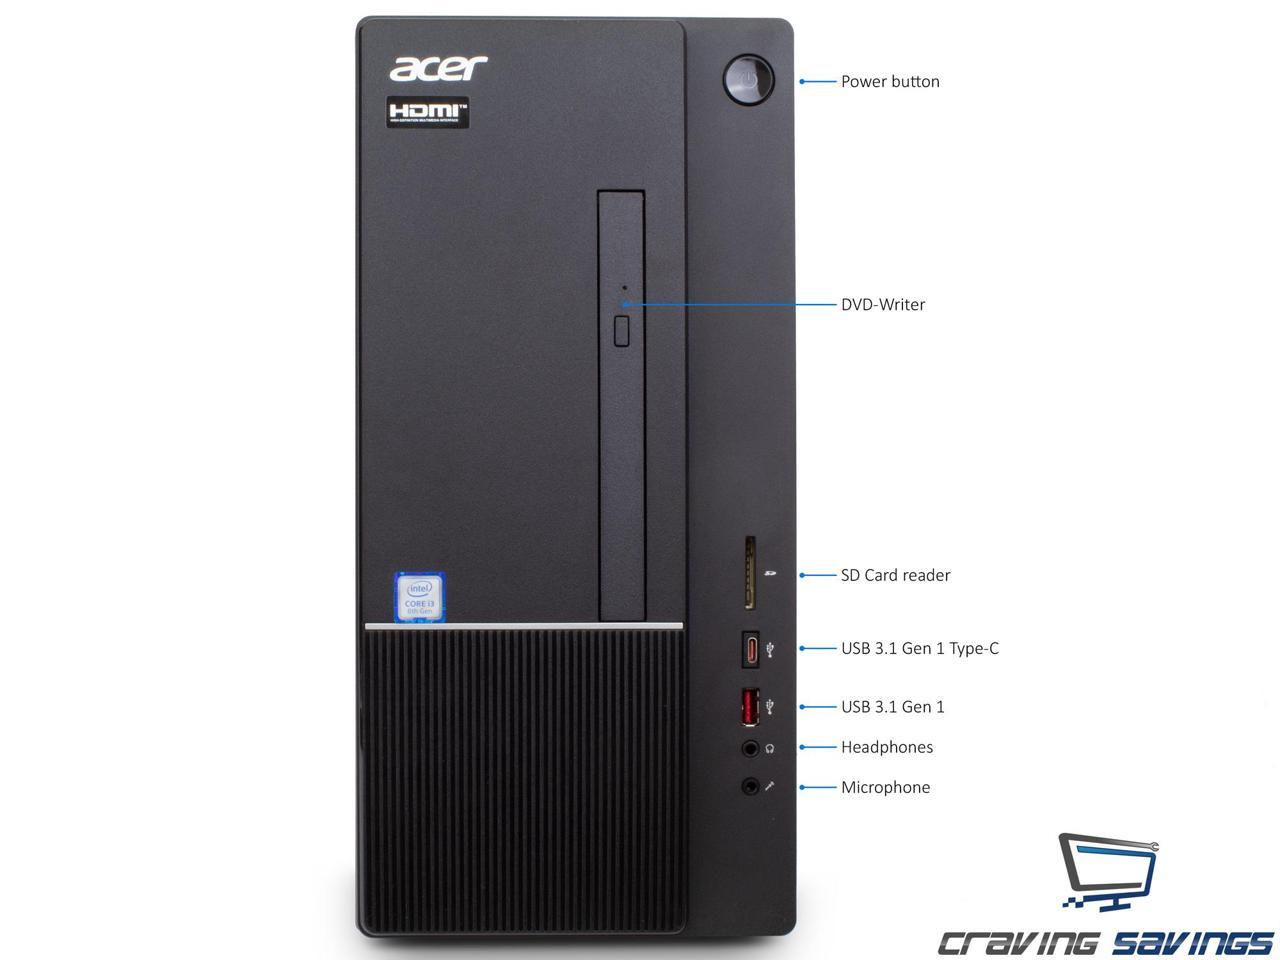 Acer Aspire TC Series Destop, Intel 6-Core i5-8400 Upto 4.0GHz, 8GB DDR4, 1TB SSD, DVD-RW, VGA, HDMI, USB, Card Reader, Wi-Fi, Bluetooth, Windows 10 Professional 64Bit